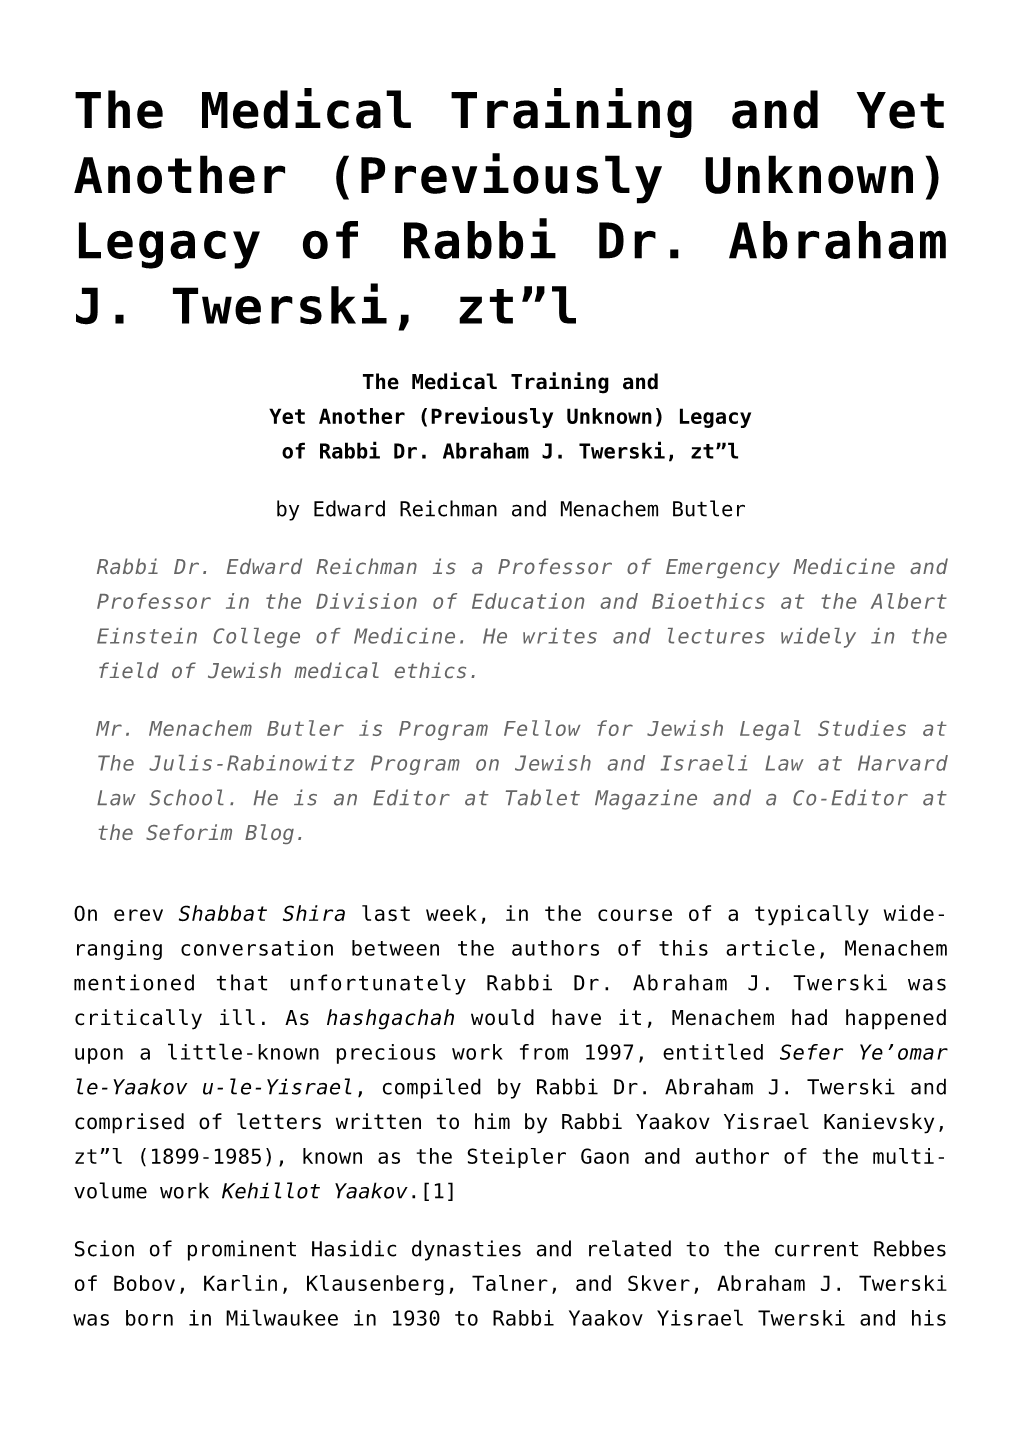 Legacy of Rabbi Dr. Abraham J. Twerski, Zt”L